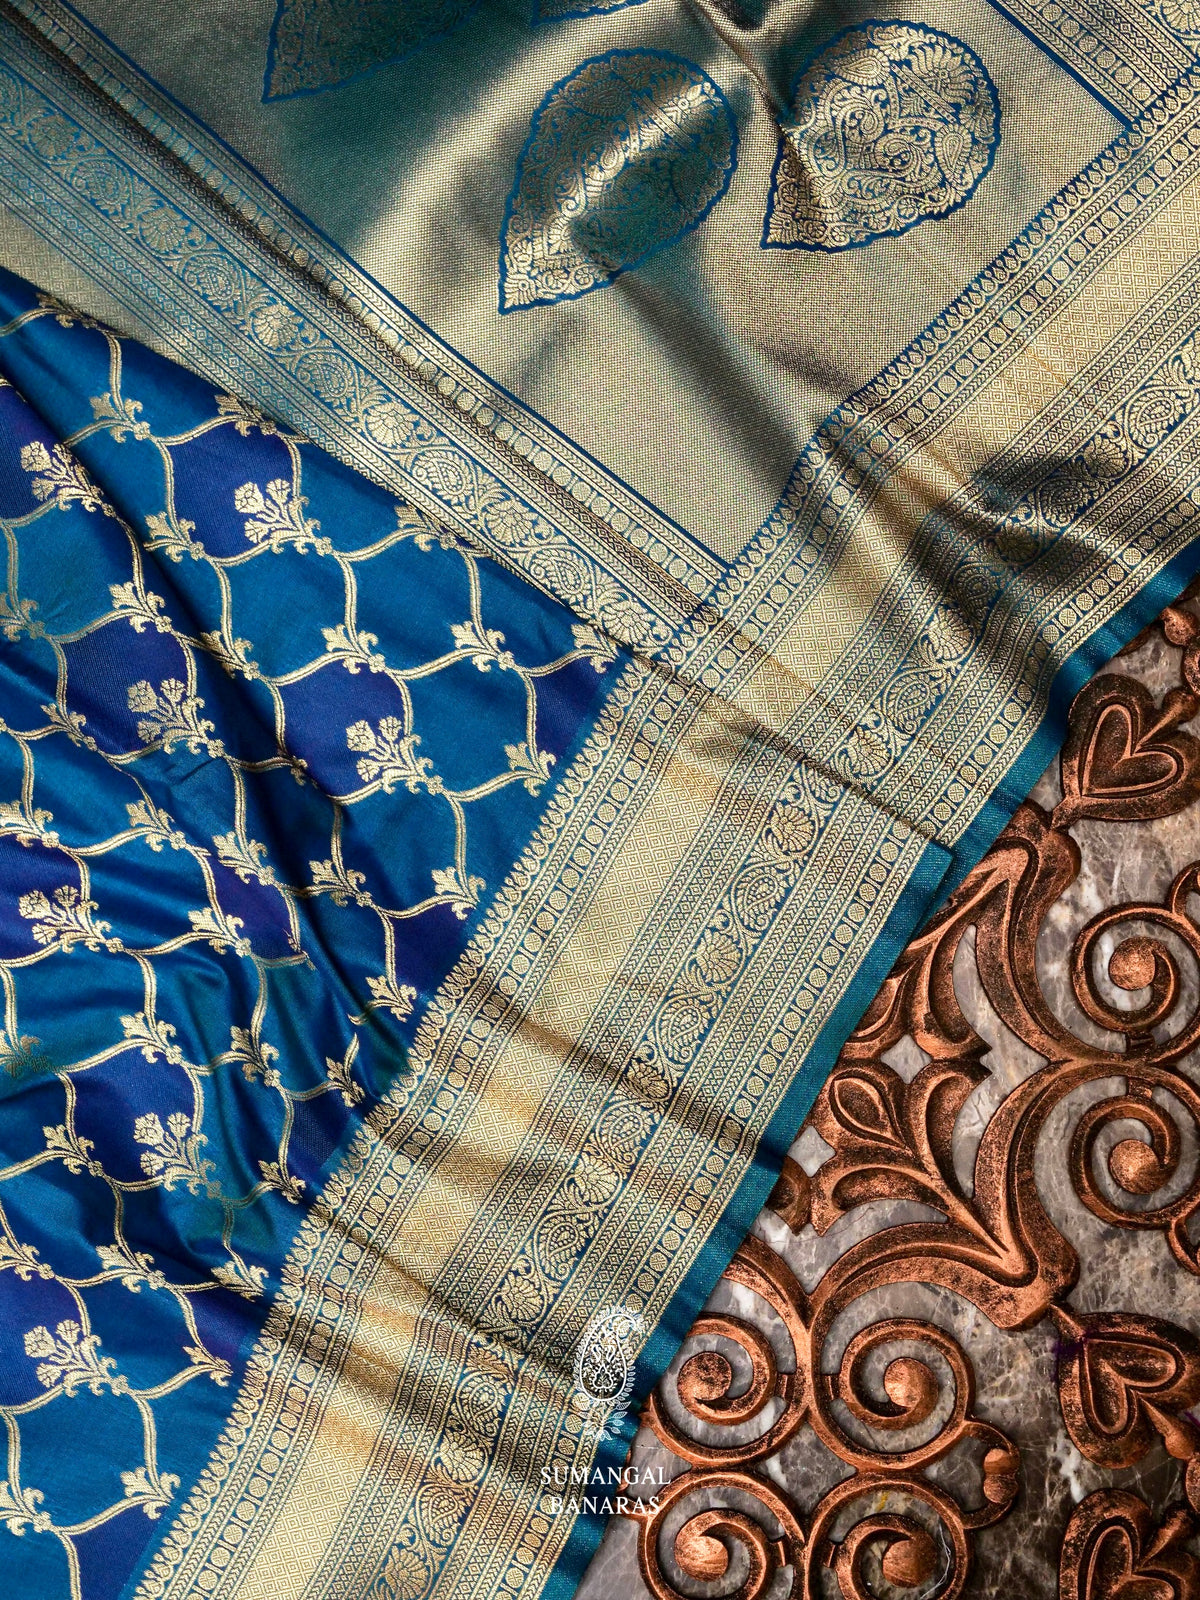 Banarasi Blue Rangkat Blended Silk Saree